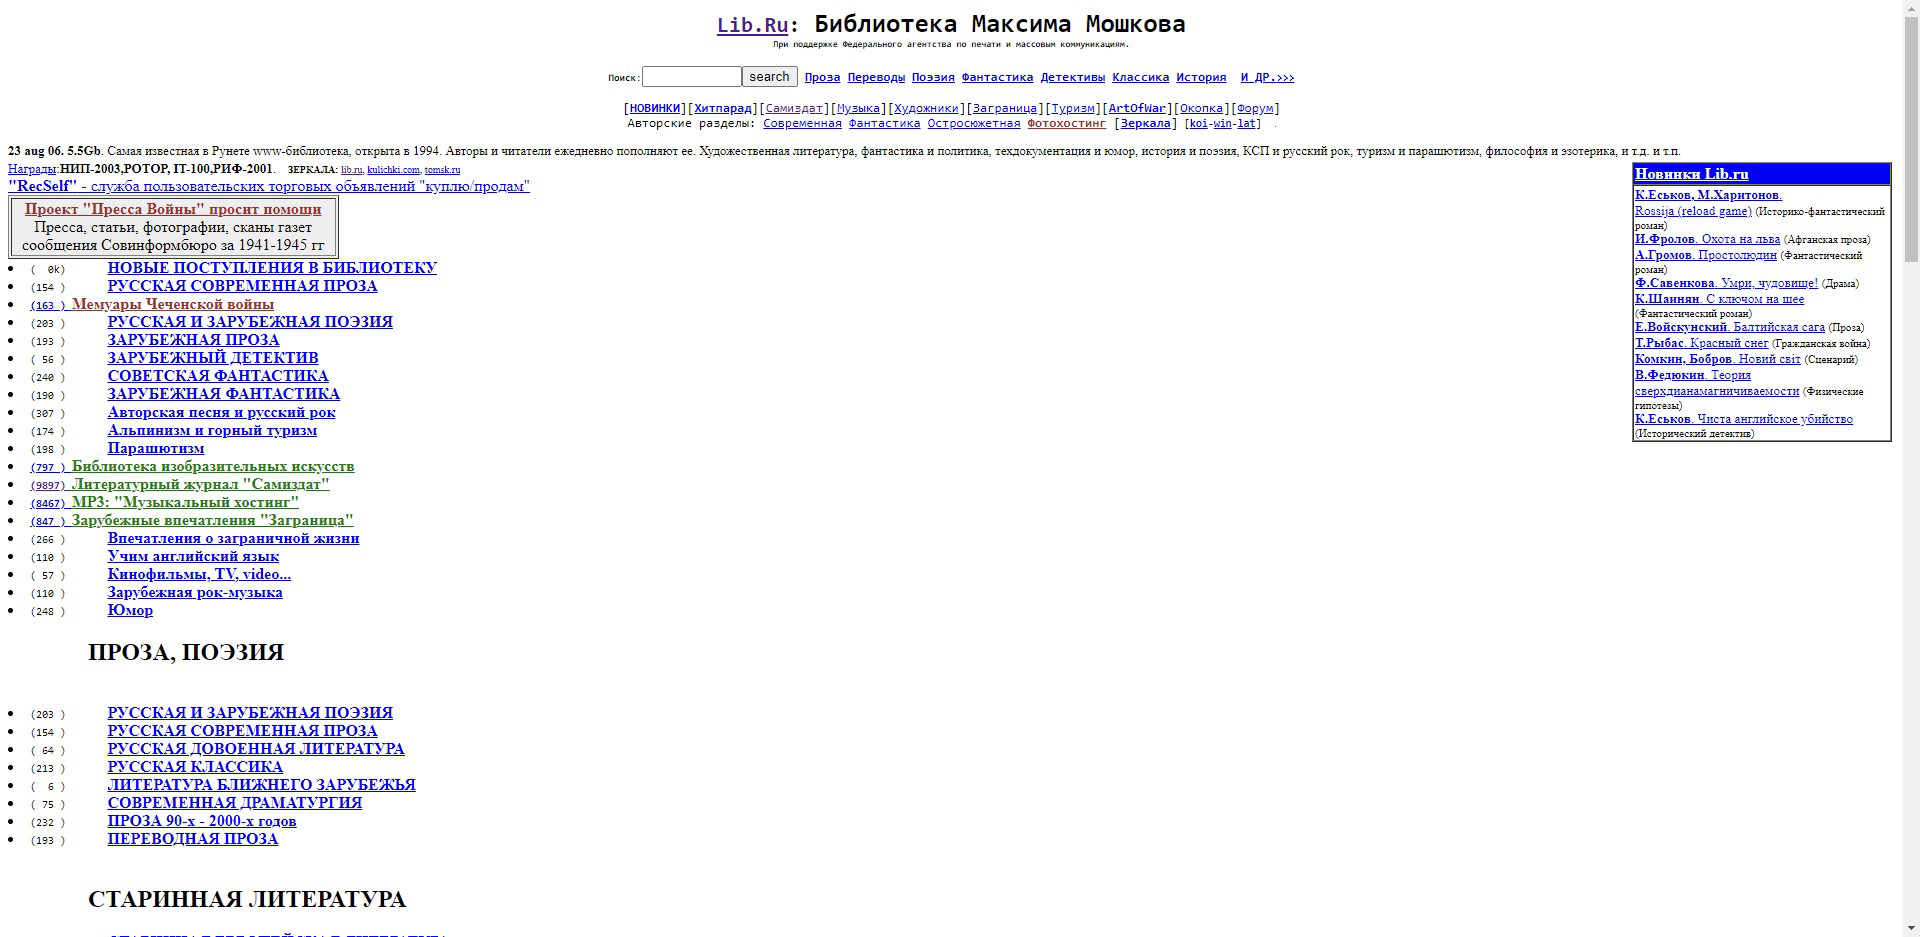 Дизайн сайта lib.ru остался таким же, каким был в 1994 году